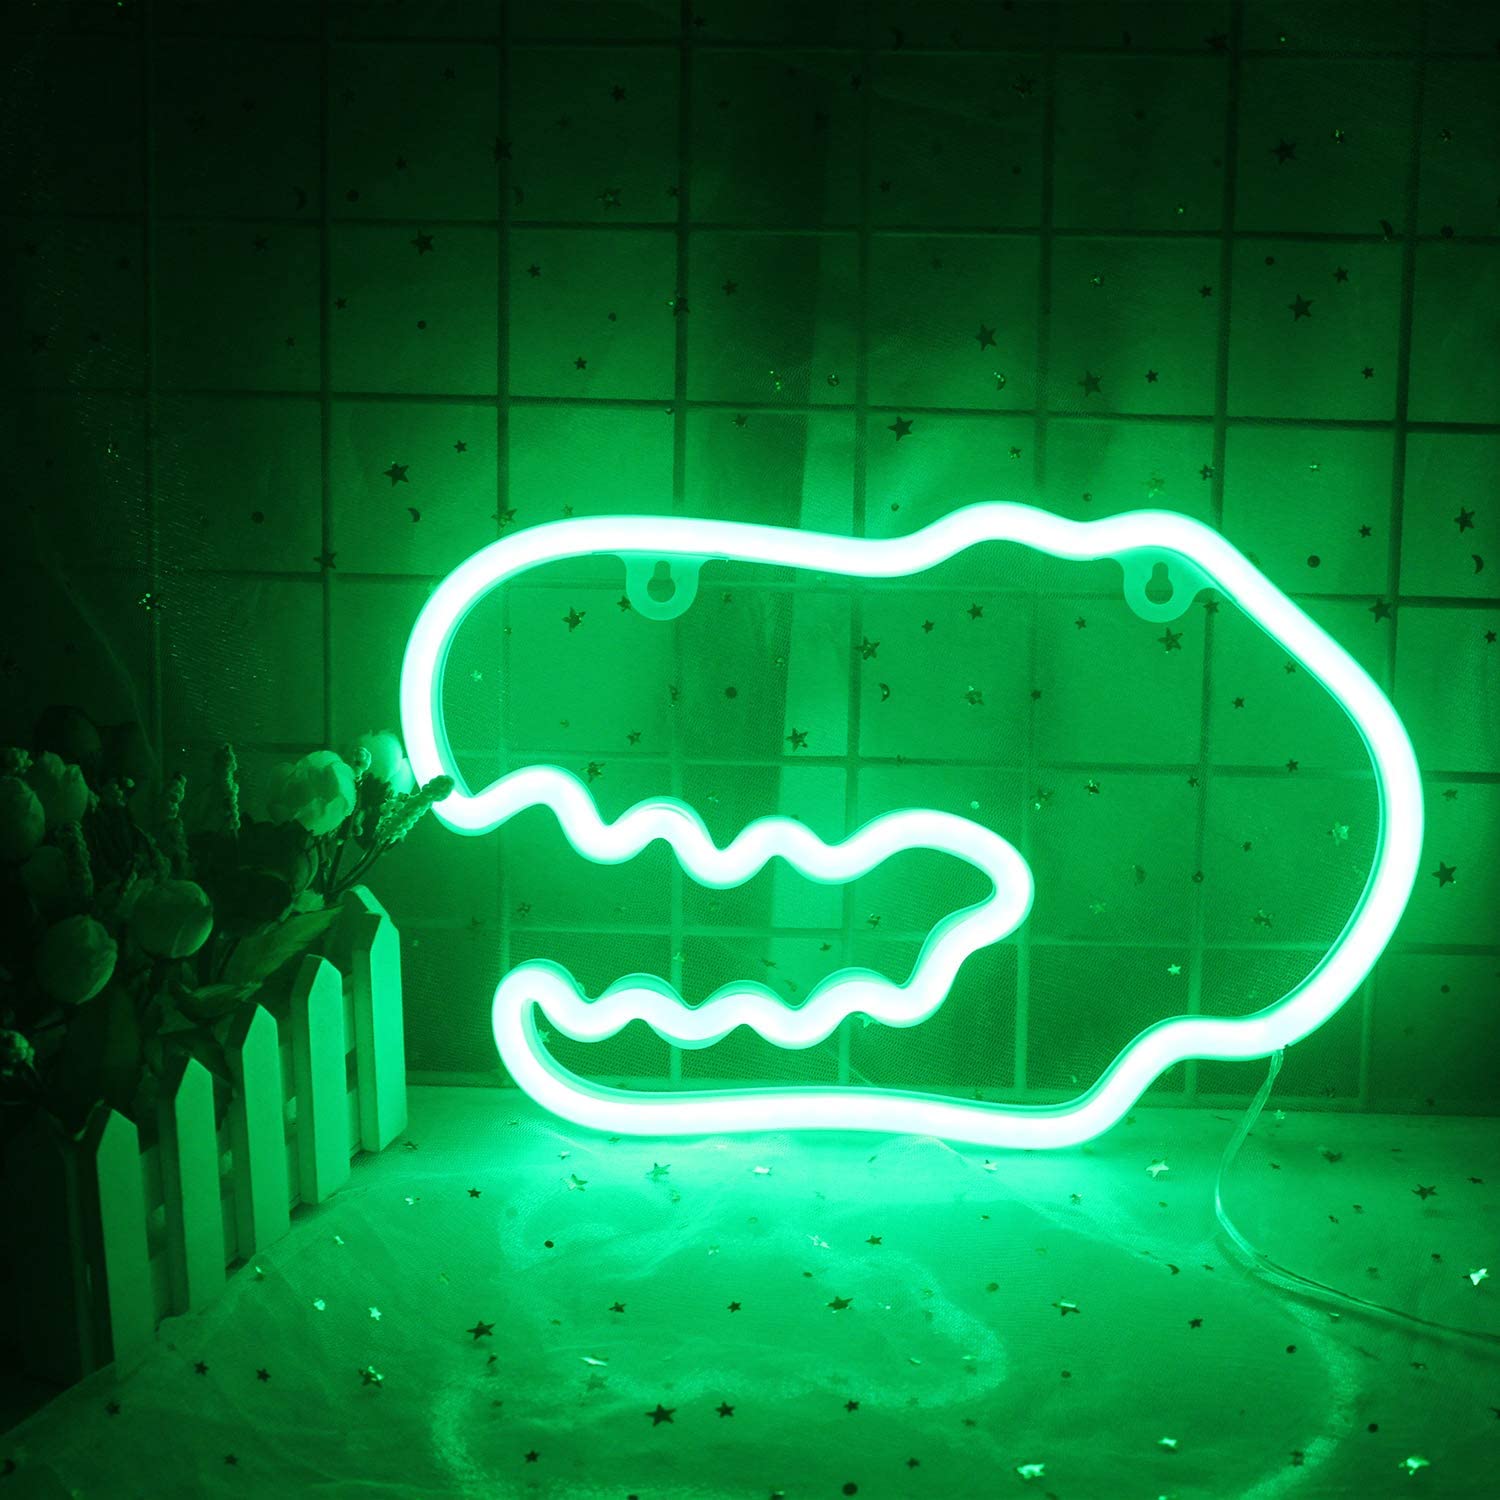 dinosaur-themed-bedroom-ideas-neon-sign